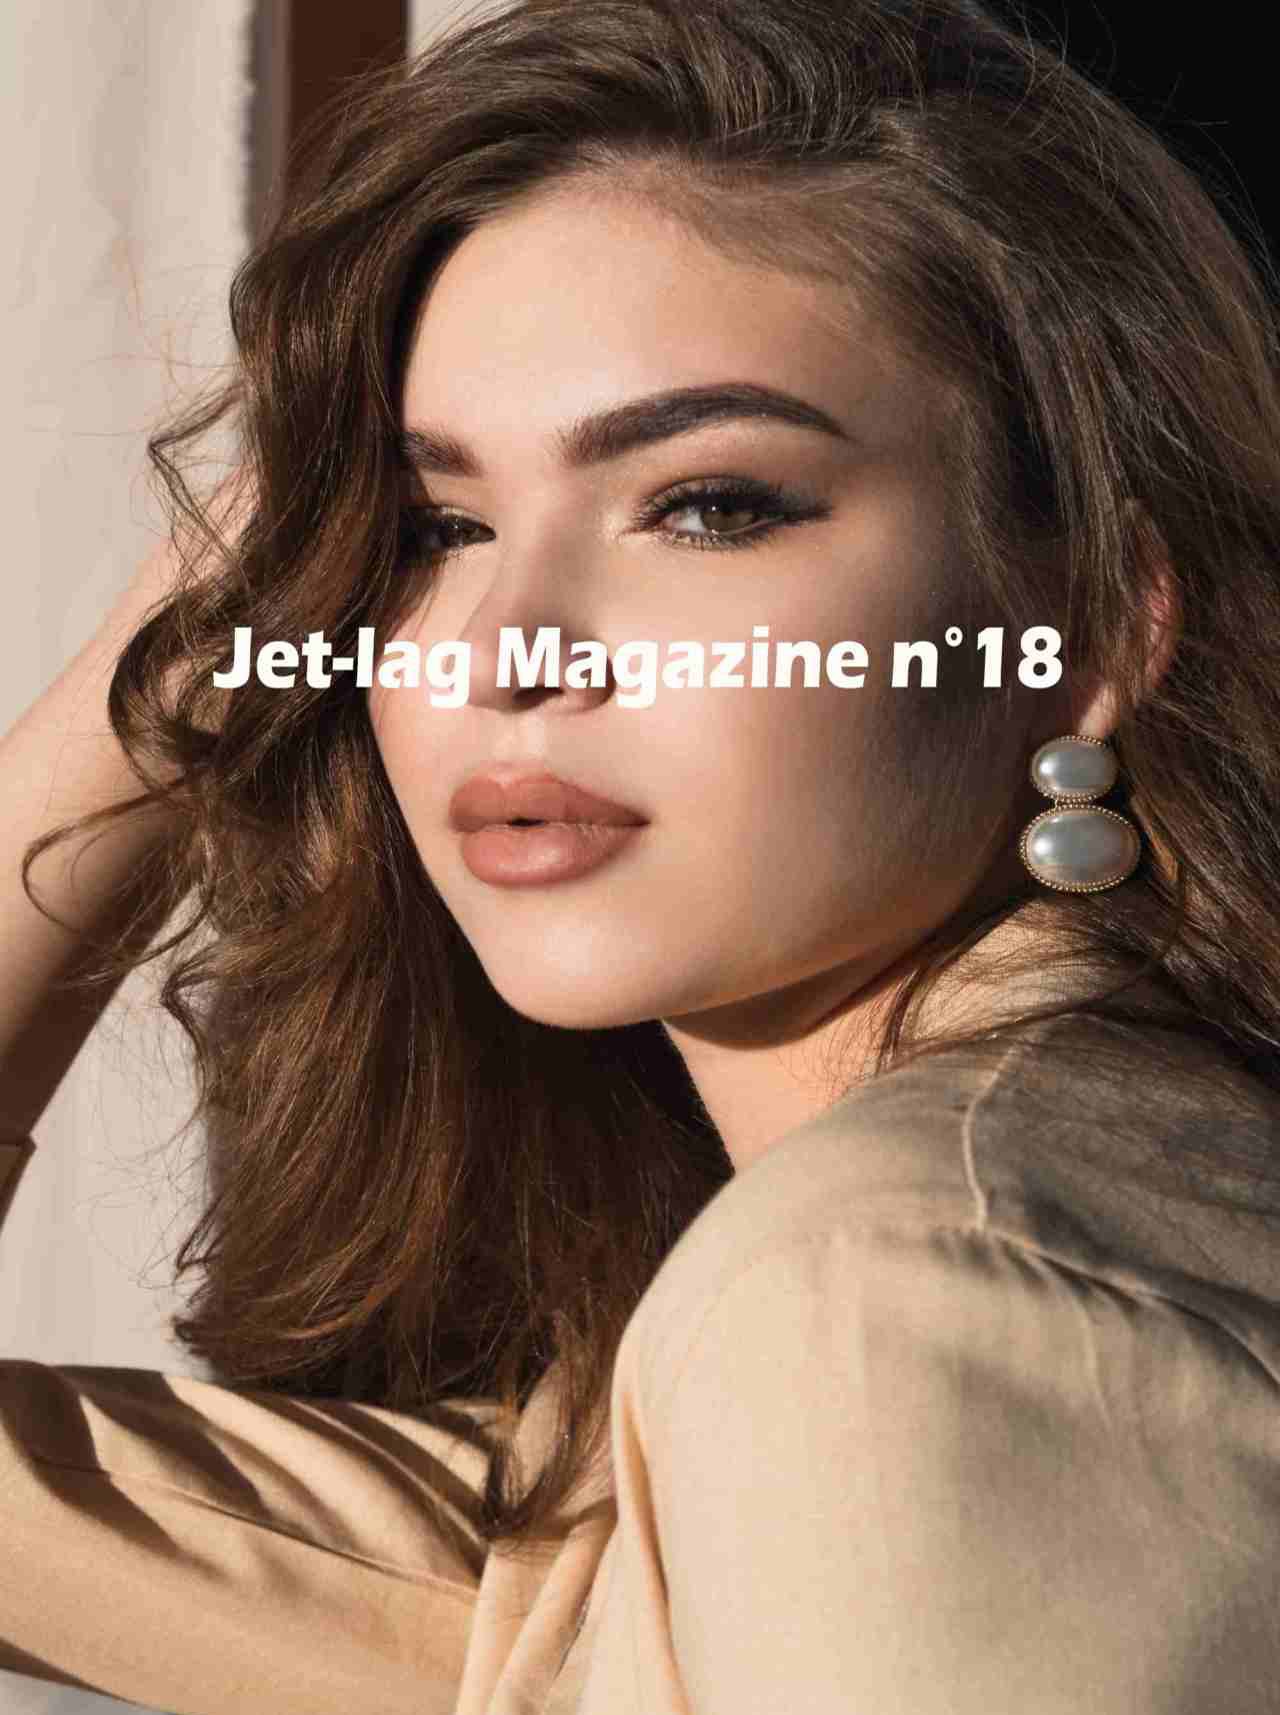 Jet-lag Magazine n°18